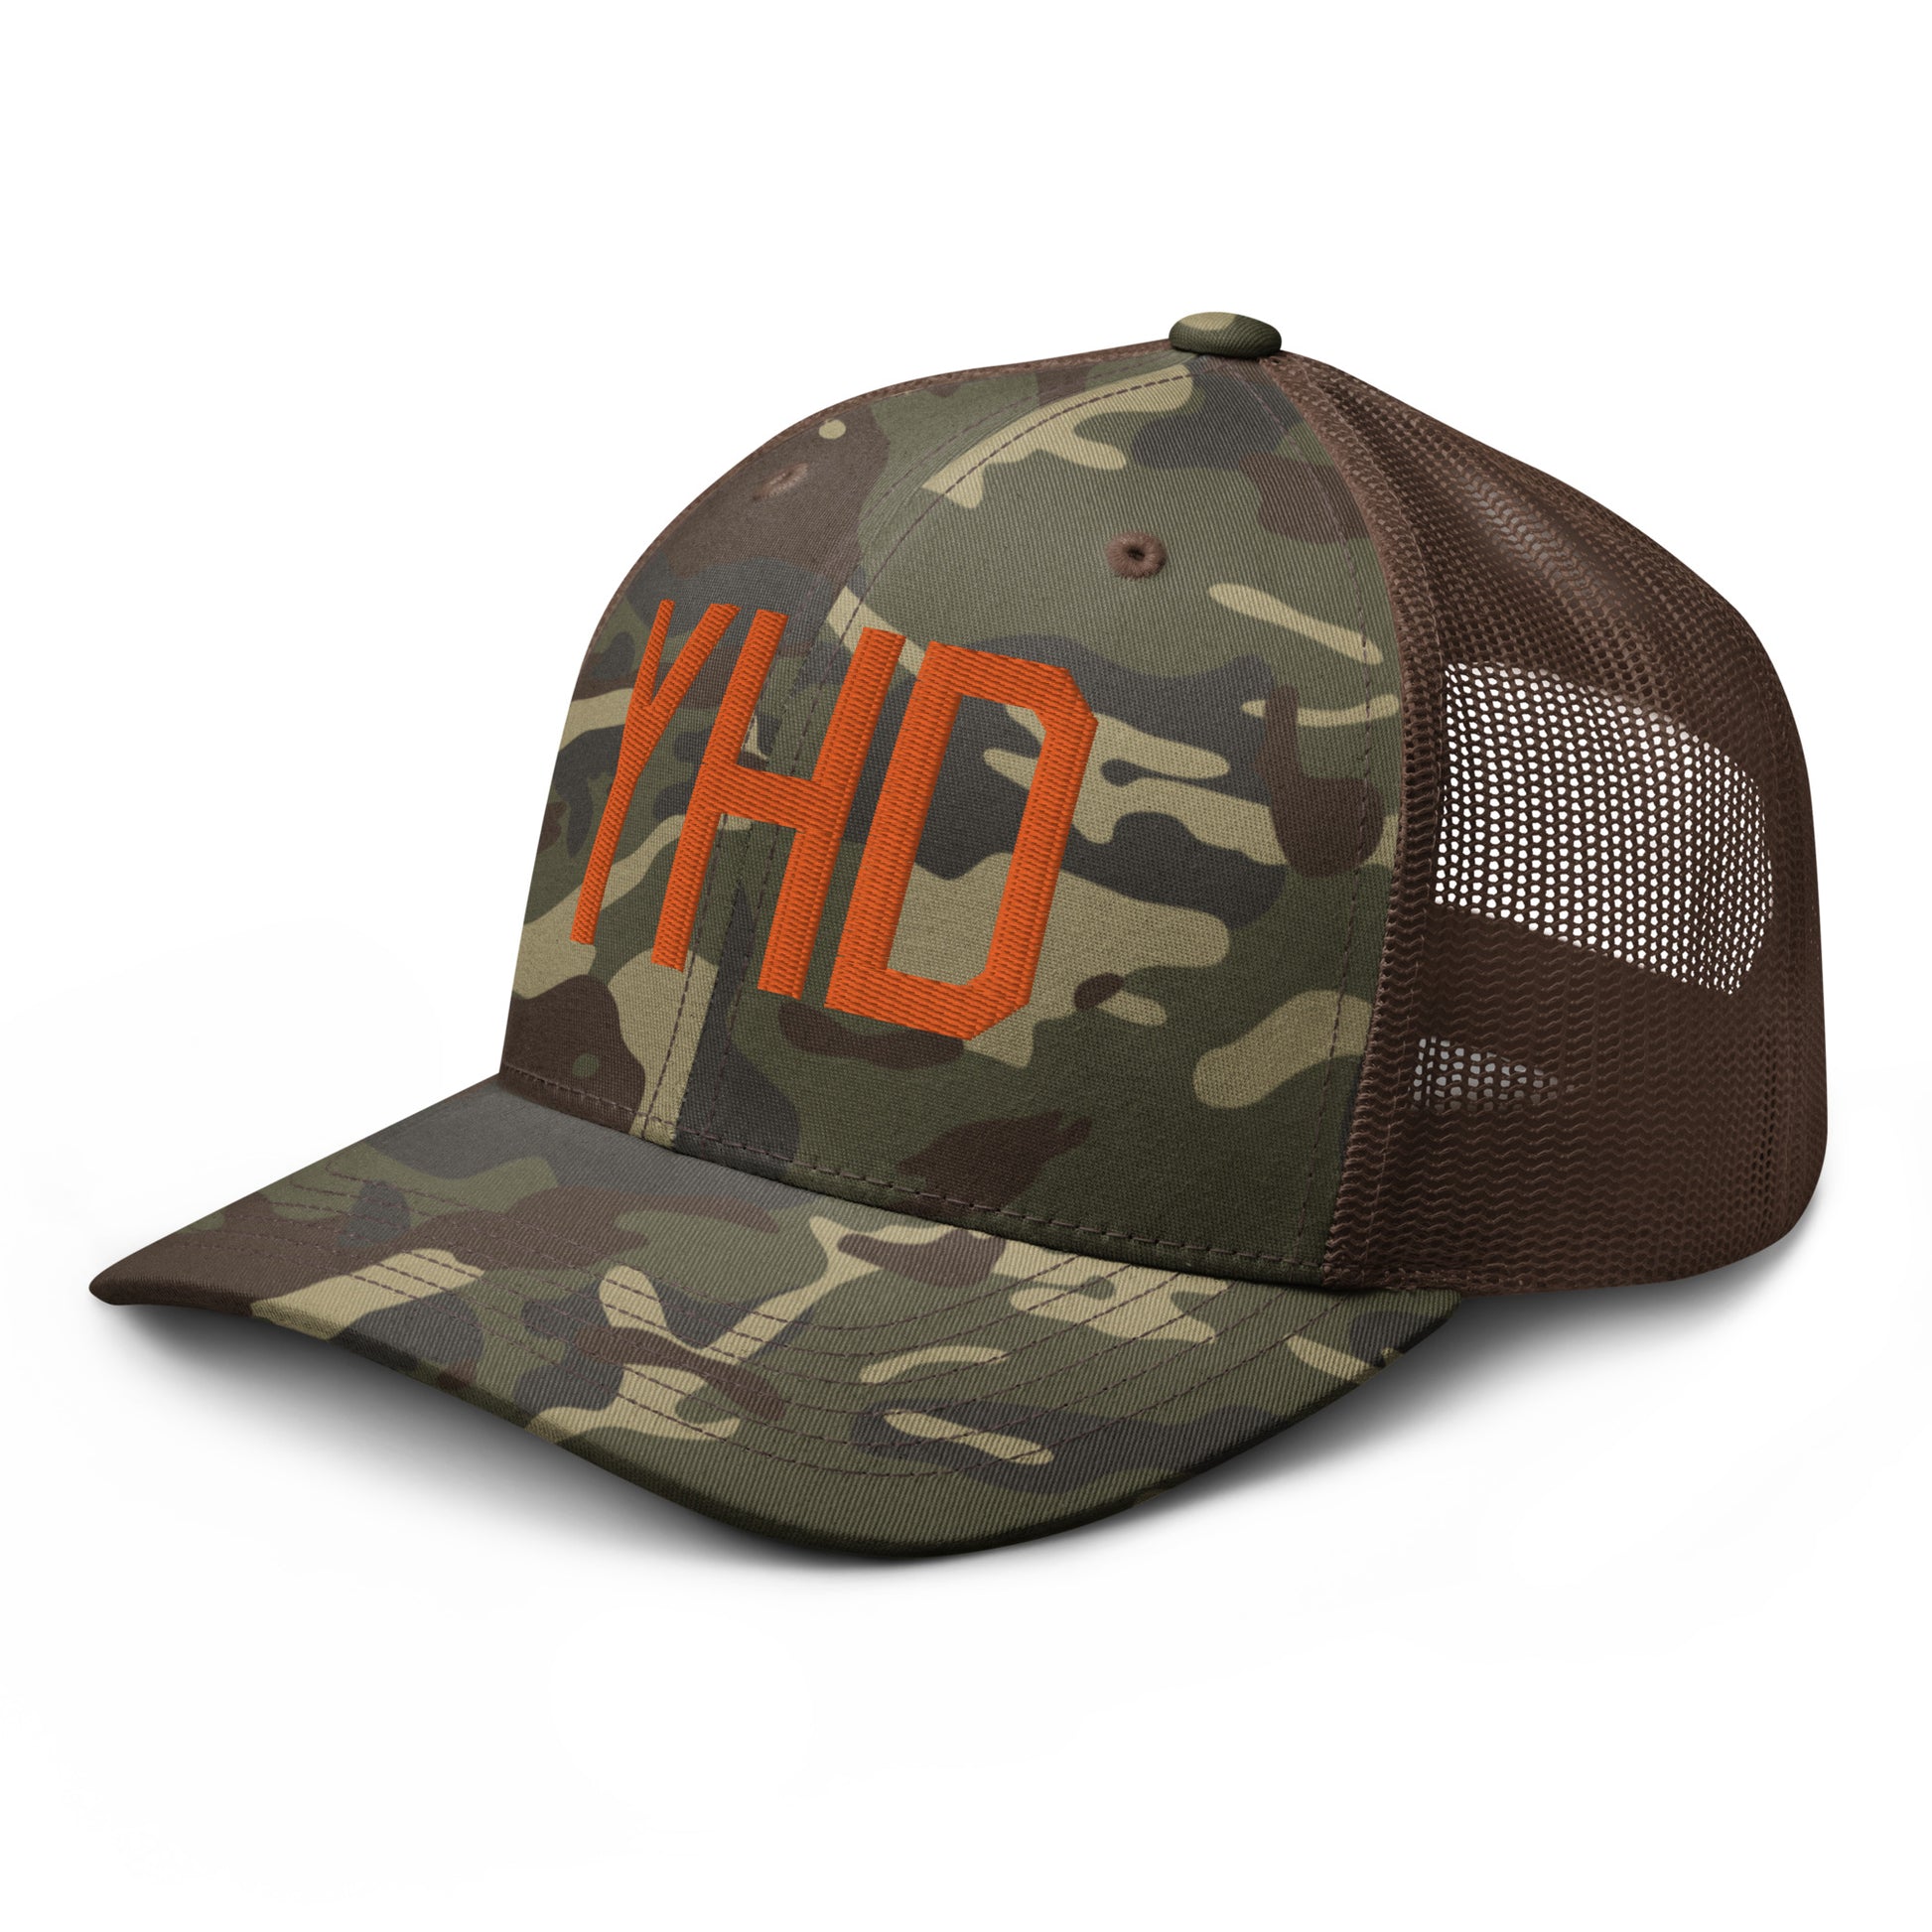 Airport Code Camouflage Trucker Hat - Orange • YHD Dryden • YHM Designs - Image 15